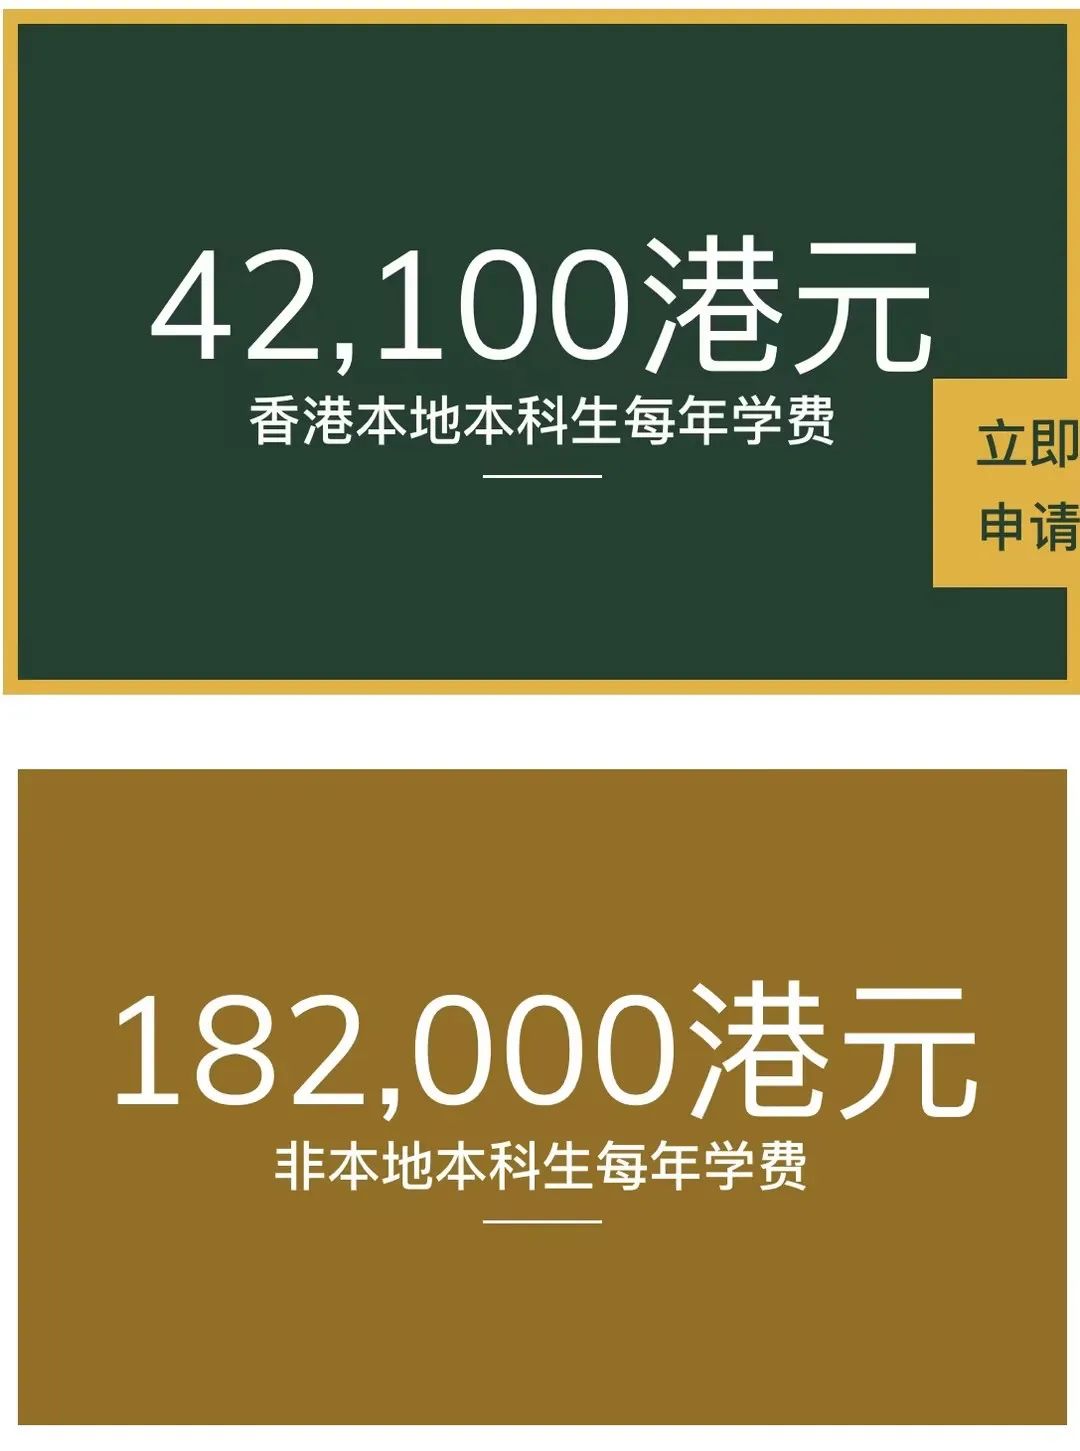 重磅！香港高校翻倍扩招“非本地生”，港籍生都慌了！